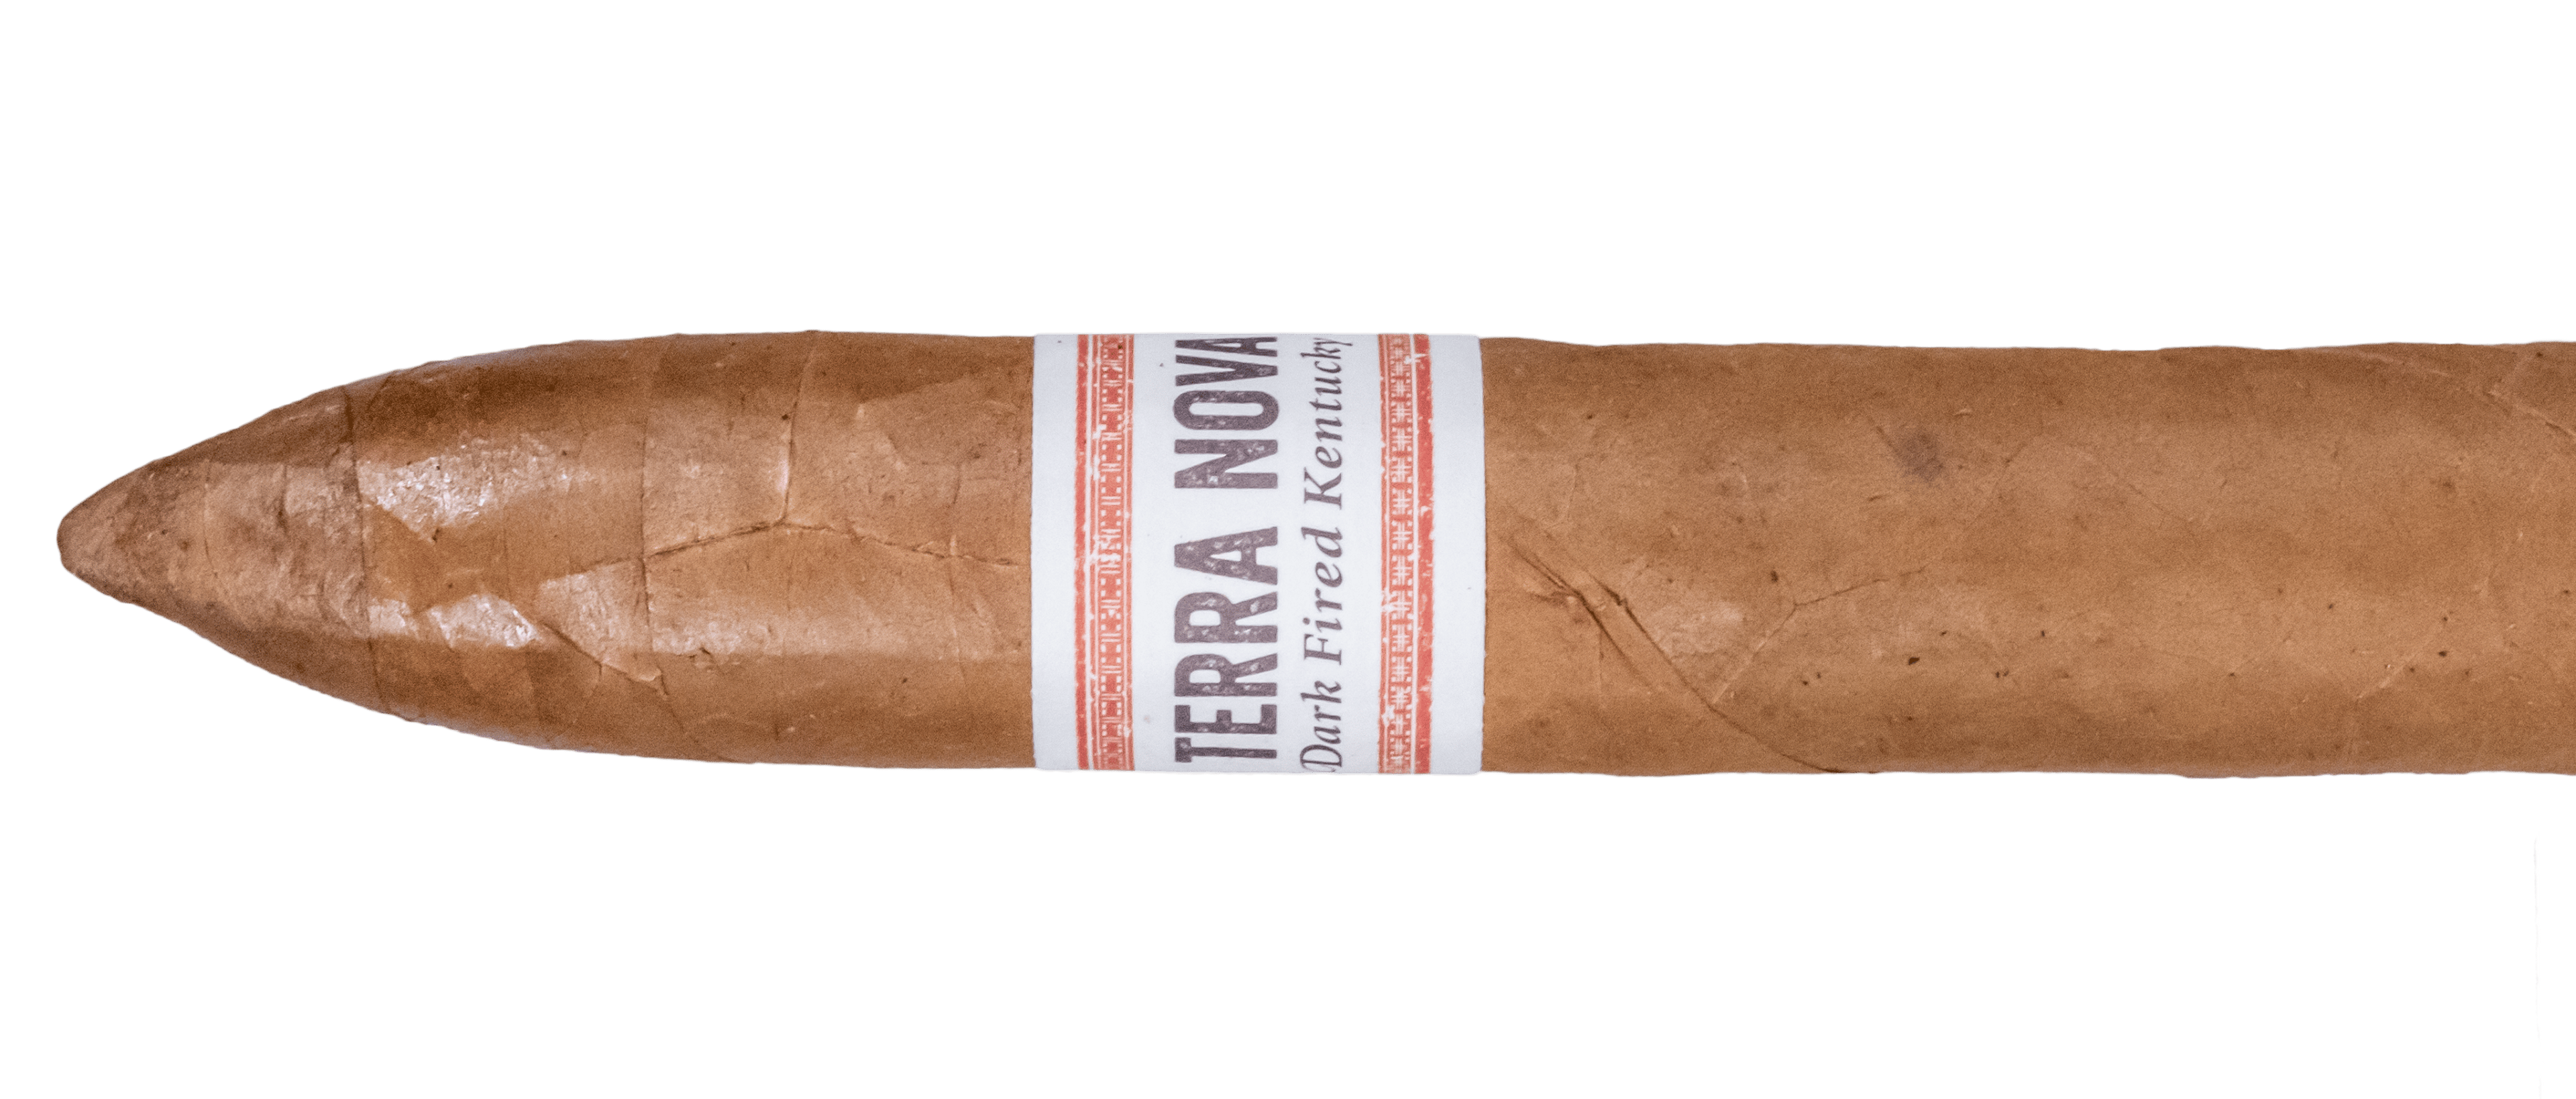 Arnold André Terra Nova Dark Fired Kentucky Belicoso - Blind Cigar Review